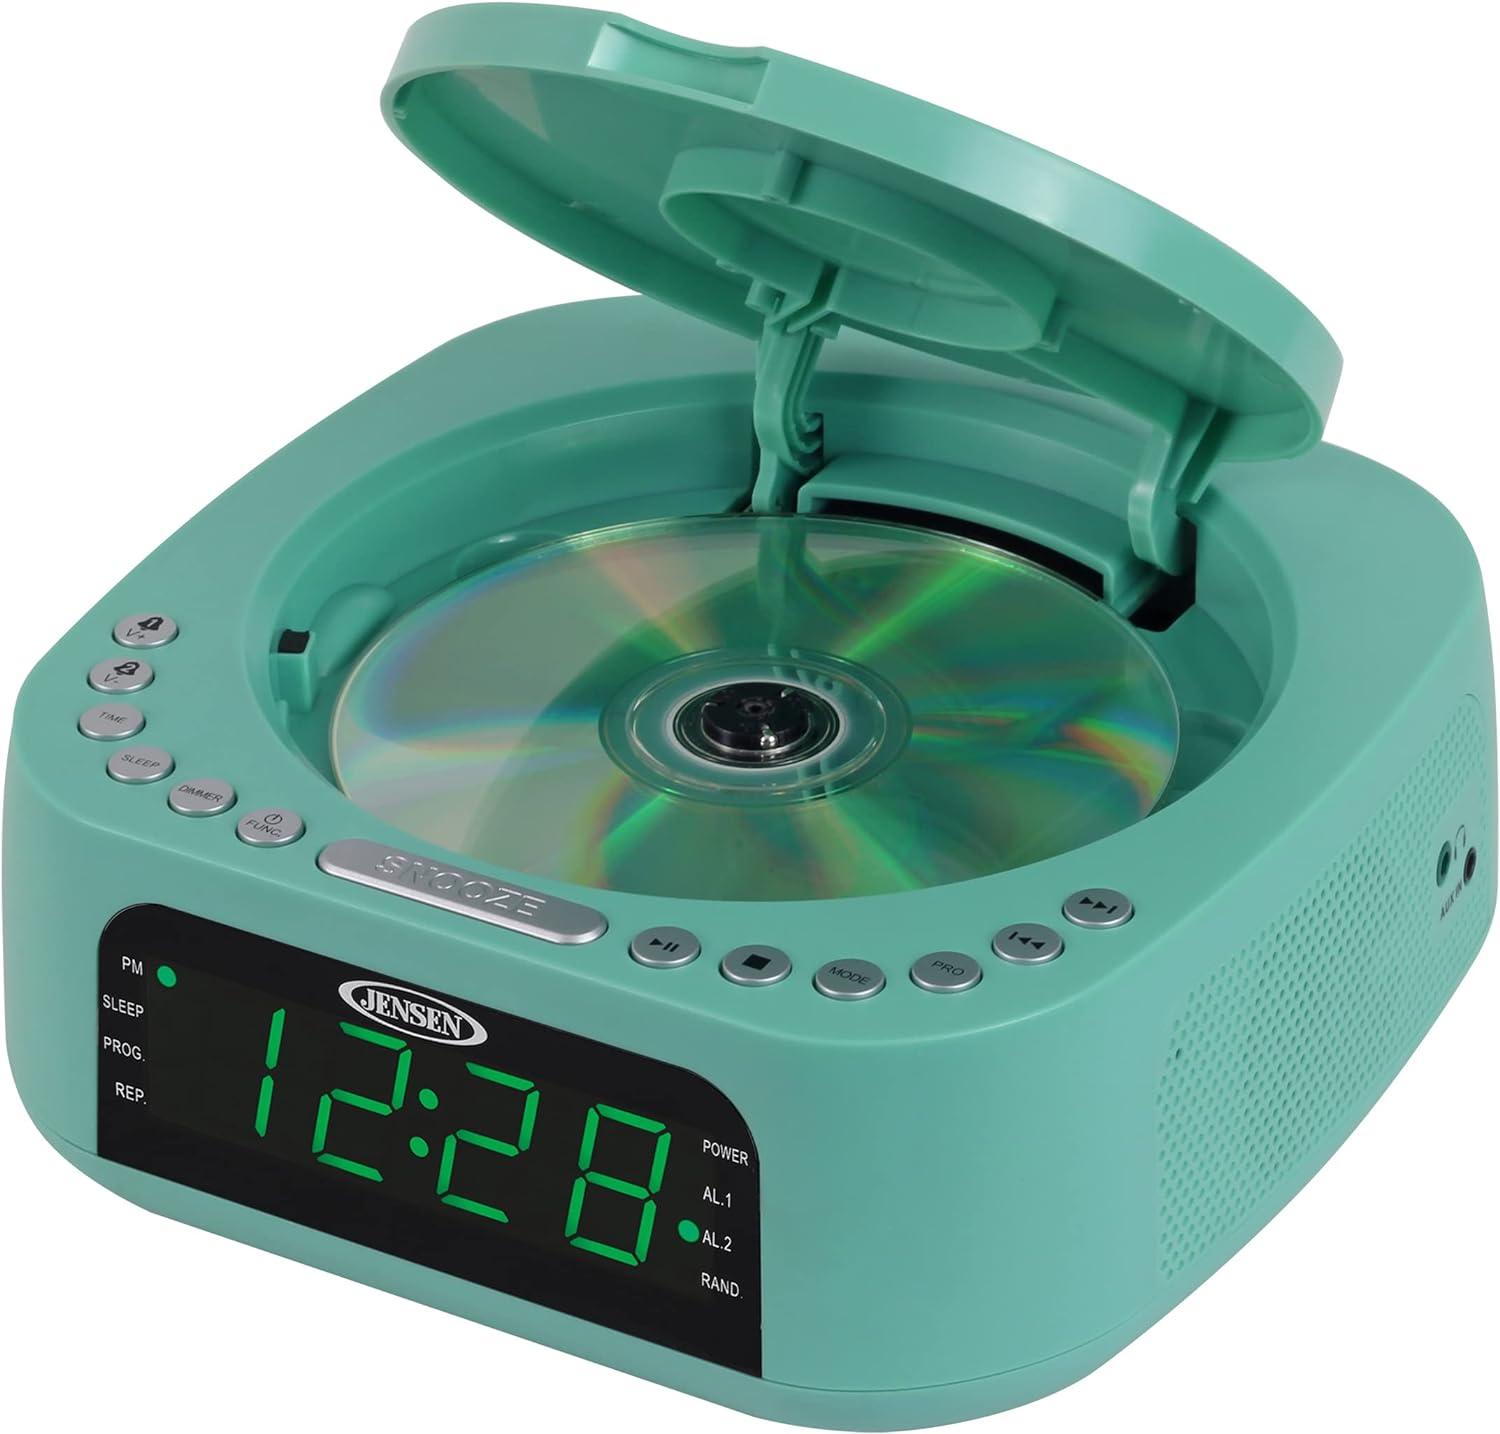 Verde azulado Reproductor de CD de audio para el hogar estéreo de mesa doble - VIRTUAL MUEBLES